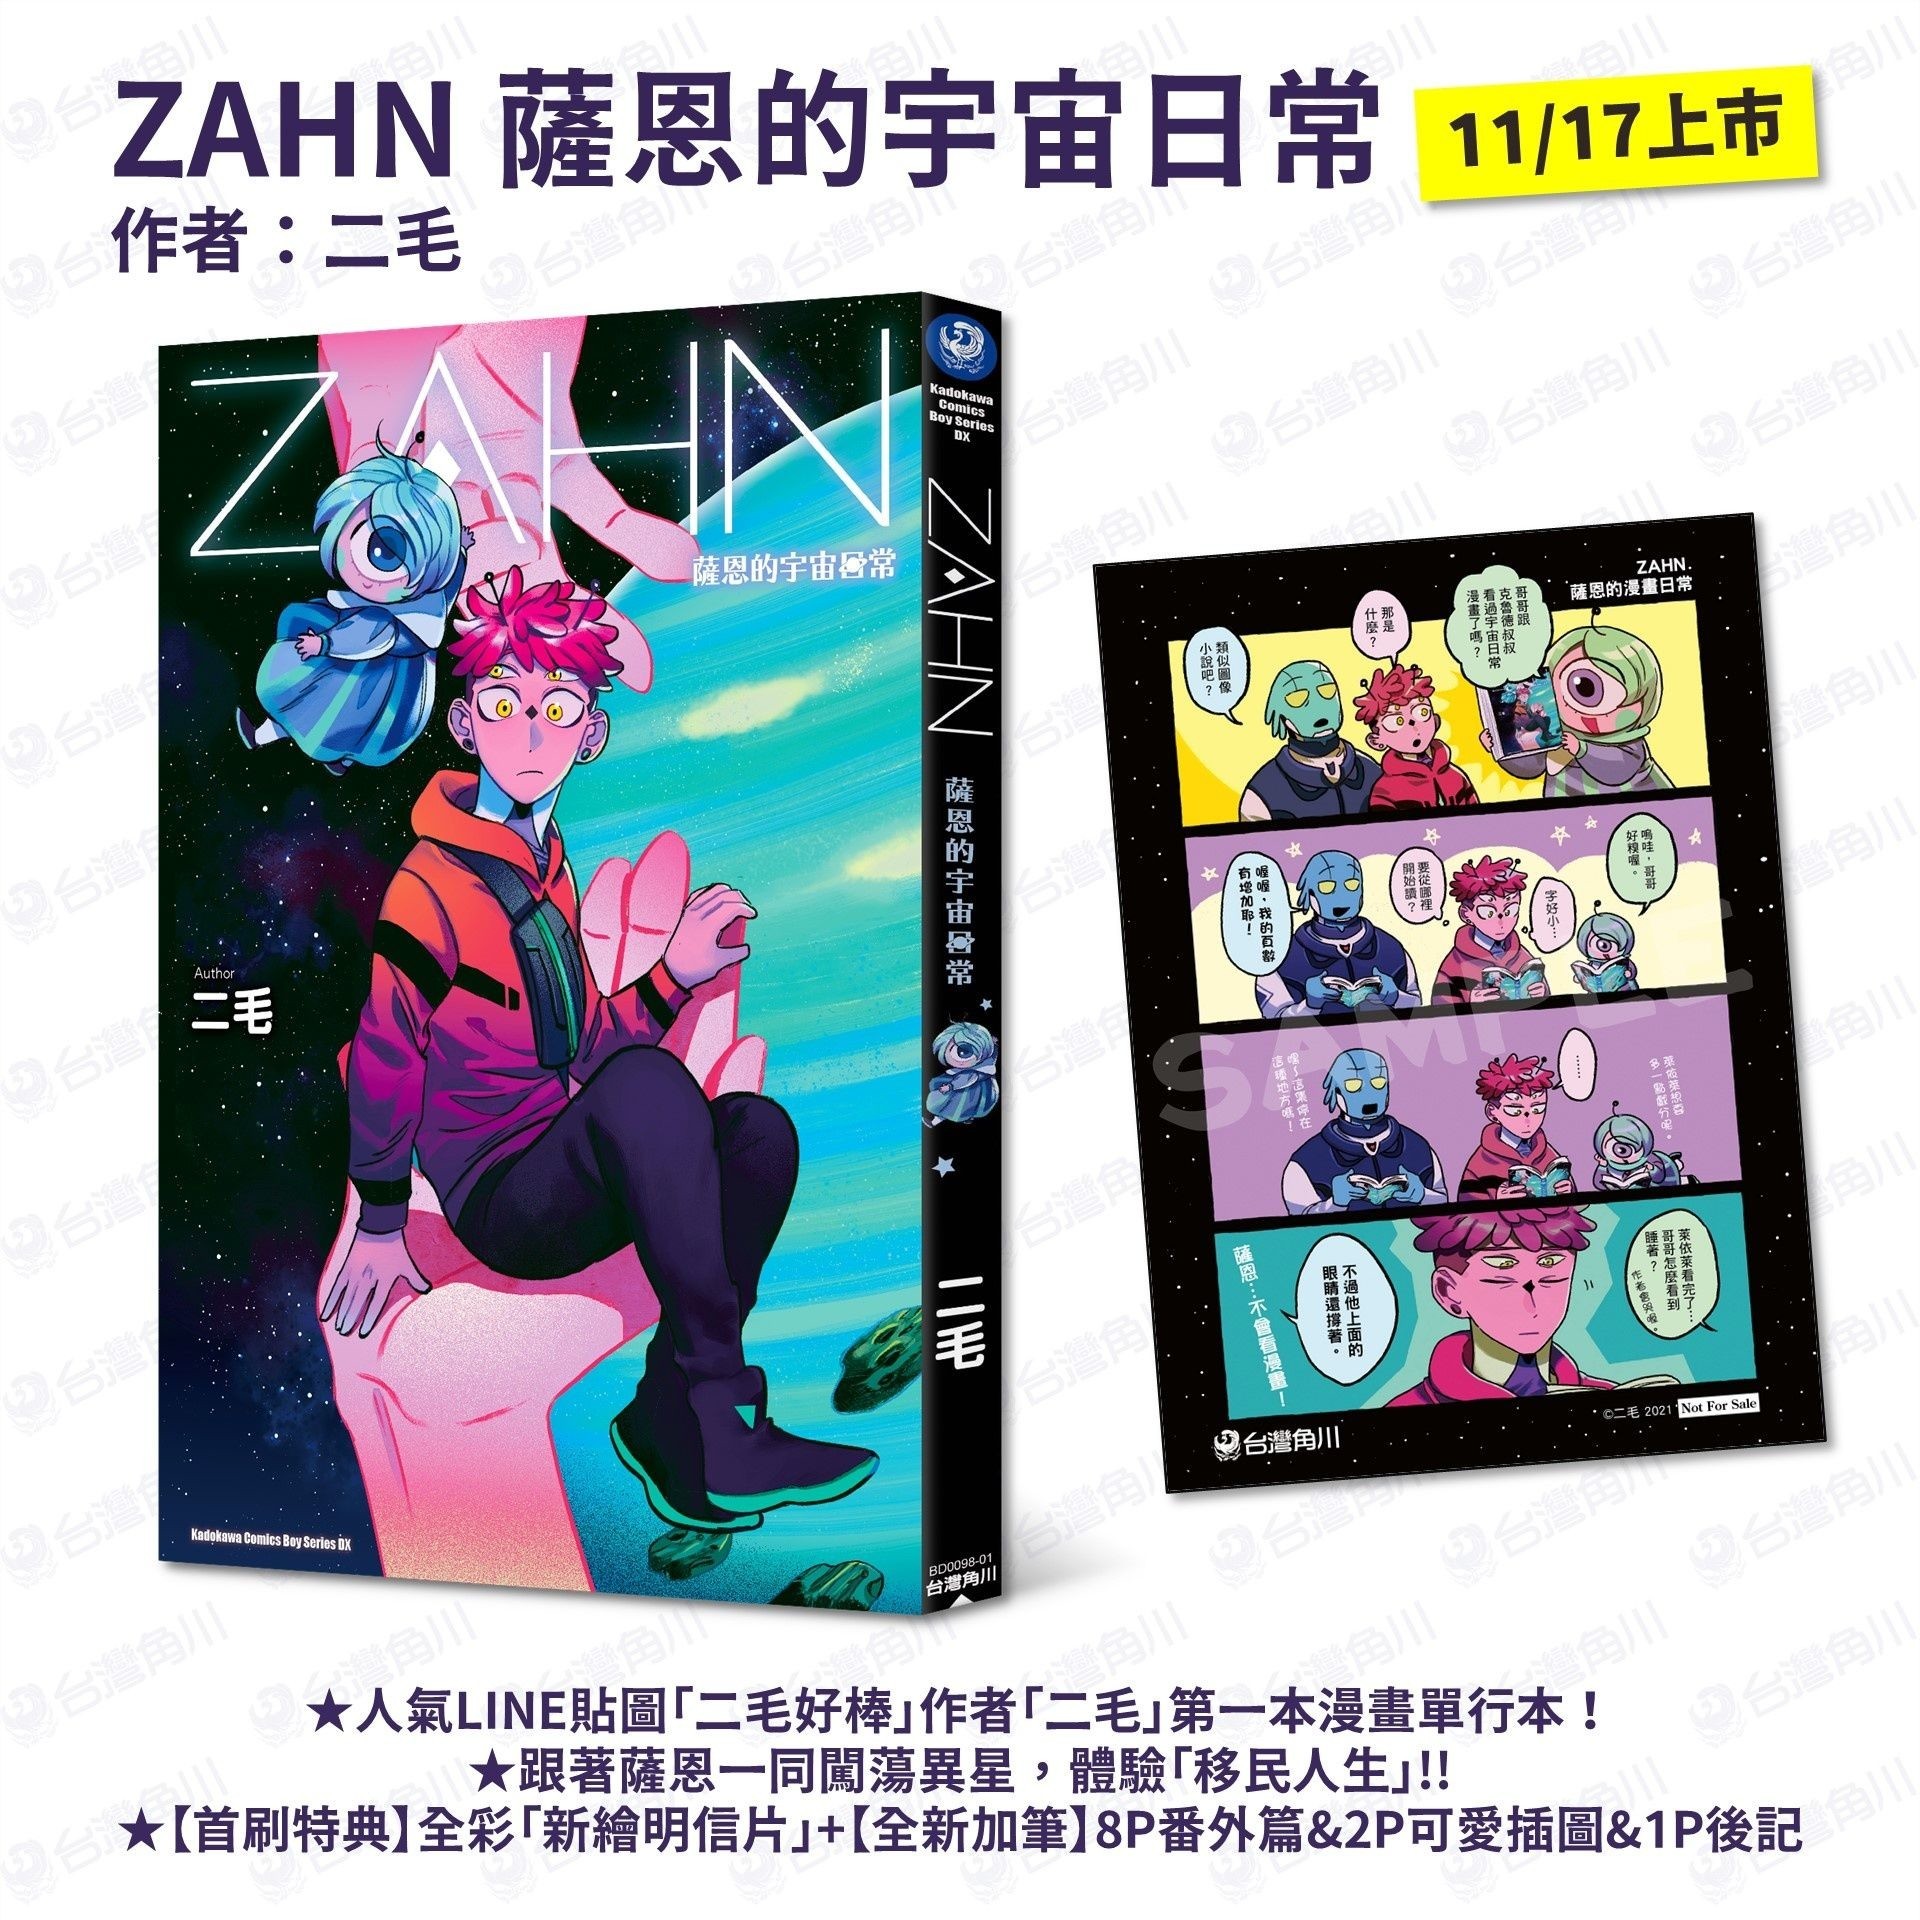 二毛推出首部漫畫單行本《ZAHN 薩恩的宇宙日常》將特別收錄加筆番外篇